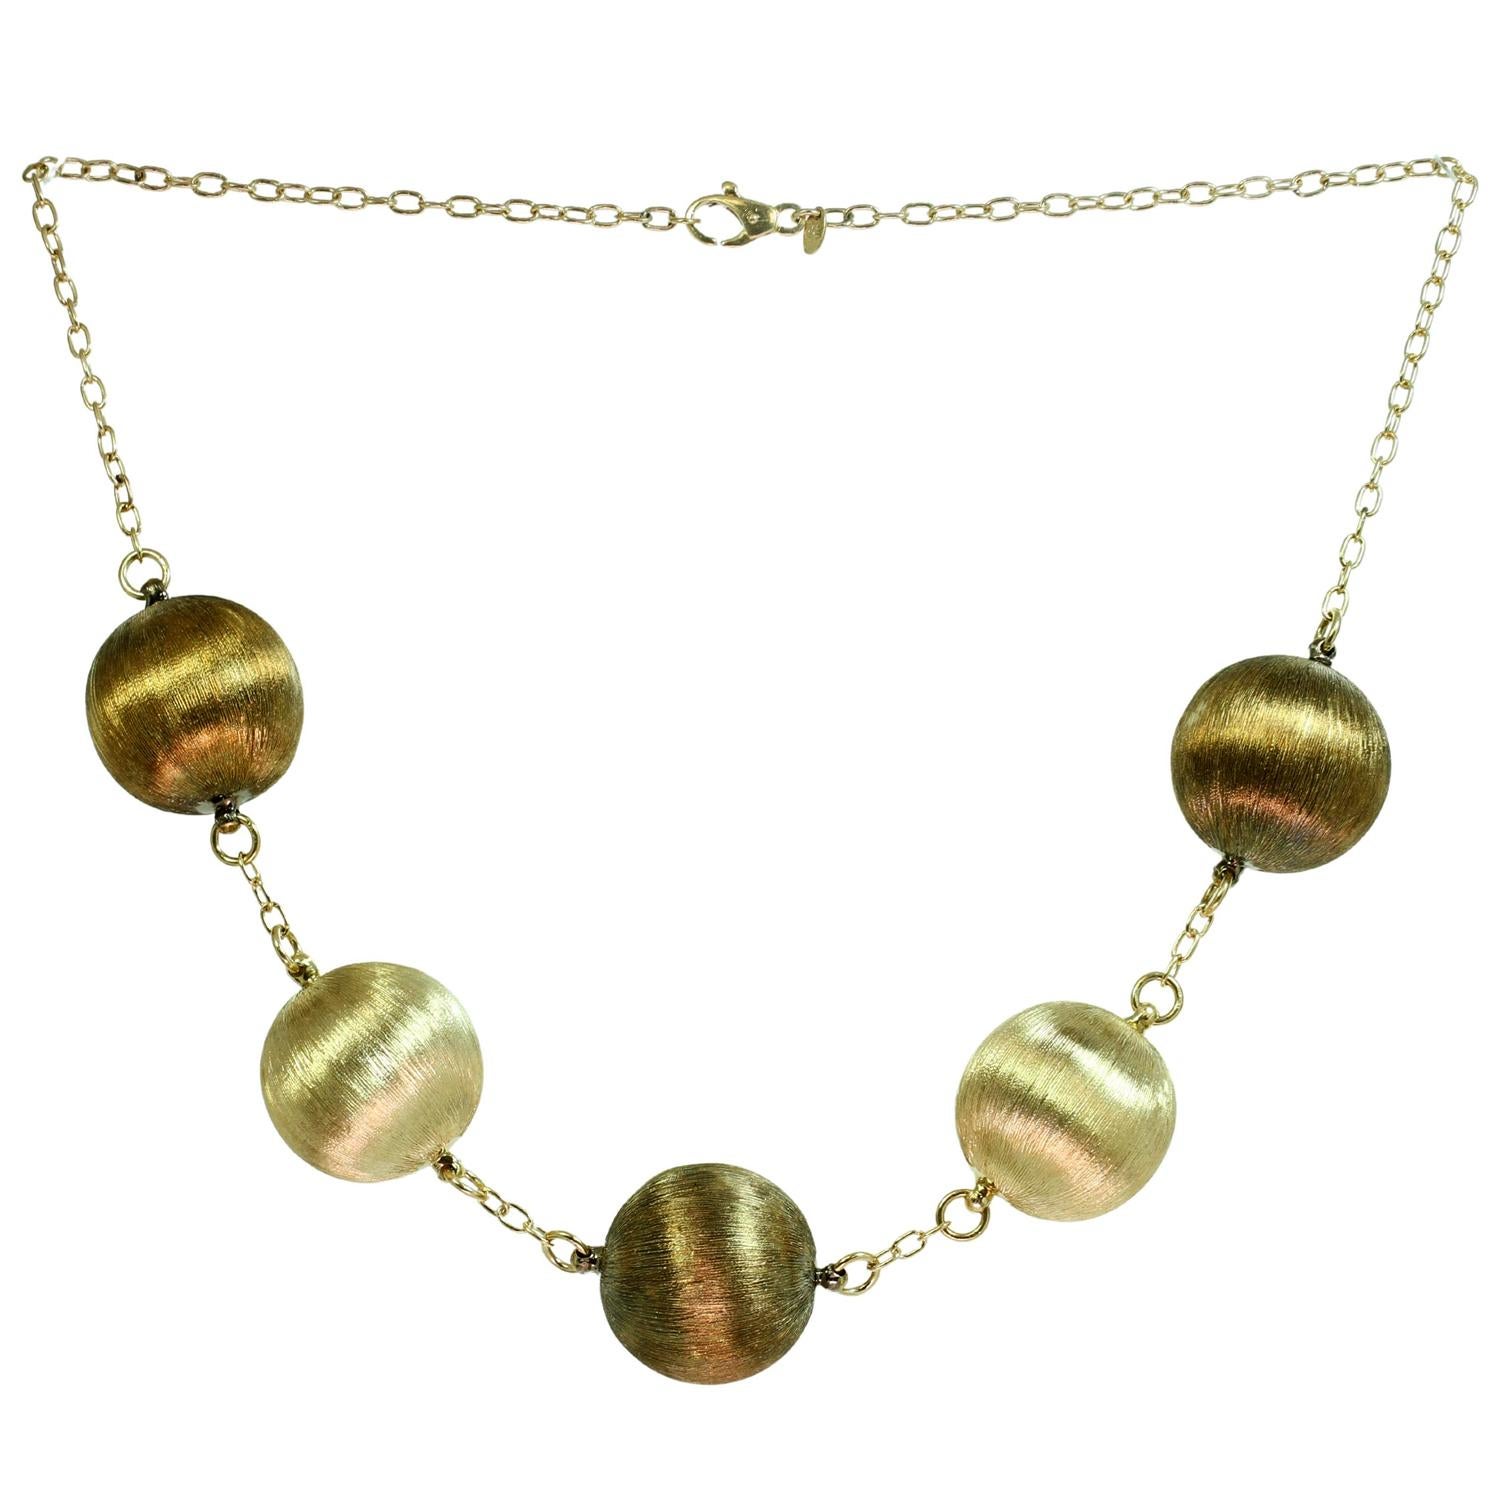 Dieses wunderschöne und schicke italienische Halskettenpaar besteht aus einer Halskette mit runden Kugeln und einer langen Kette mit ovalen Elementen, handgefertigt aus 18 Karat gebürstetem Roségold und Gelbgold. Hergestellt in Italien in den 1990er